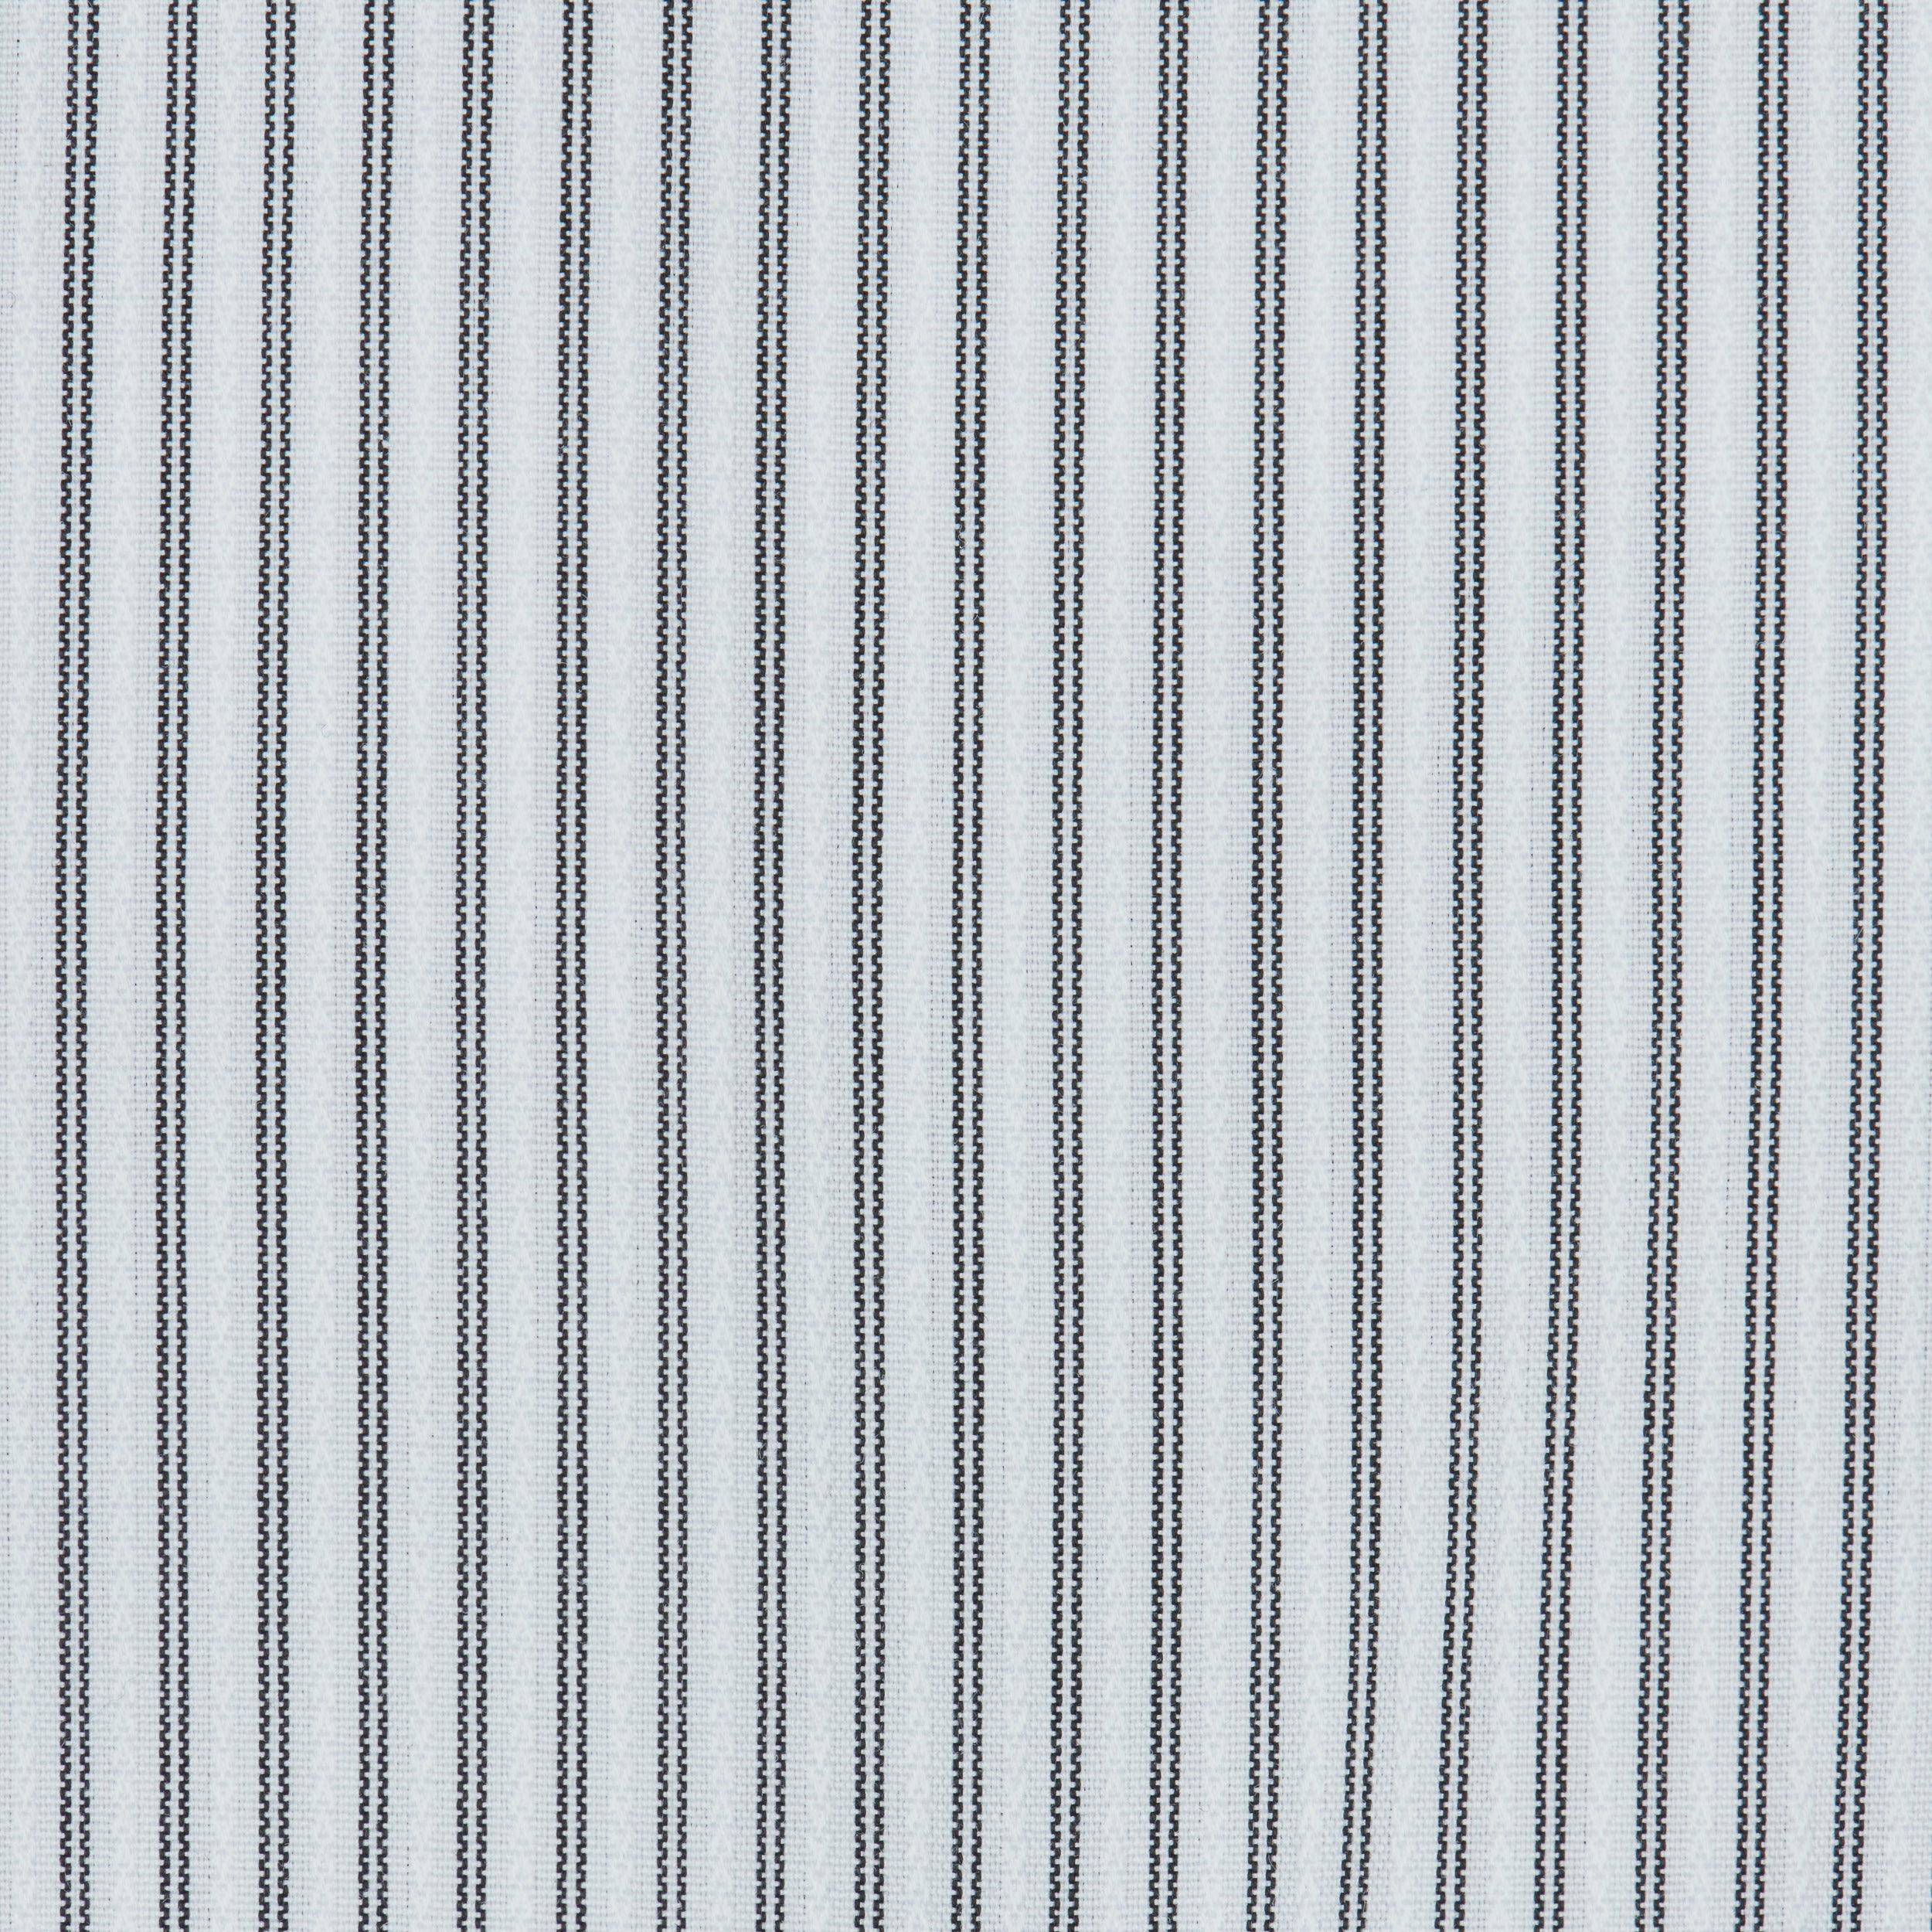 062 SC - Black Satin Stripe Spread Collar